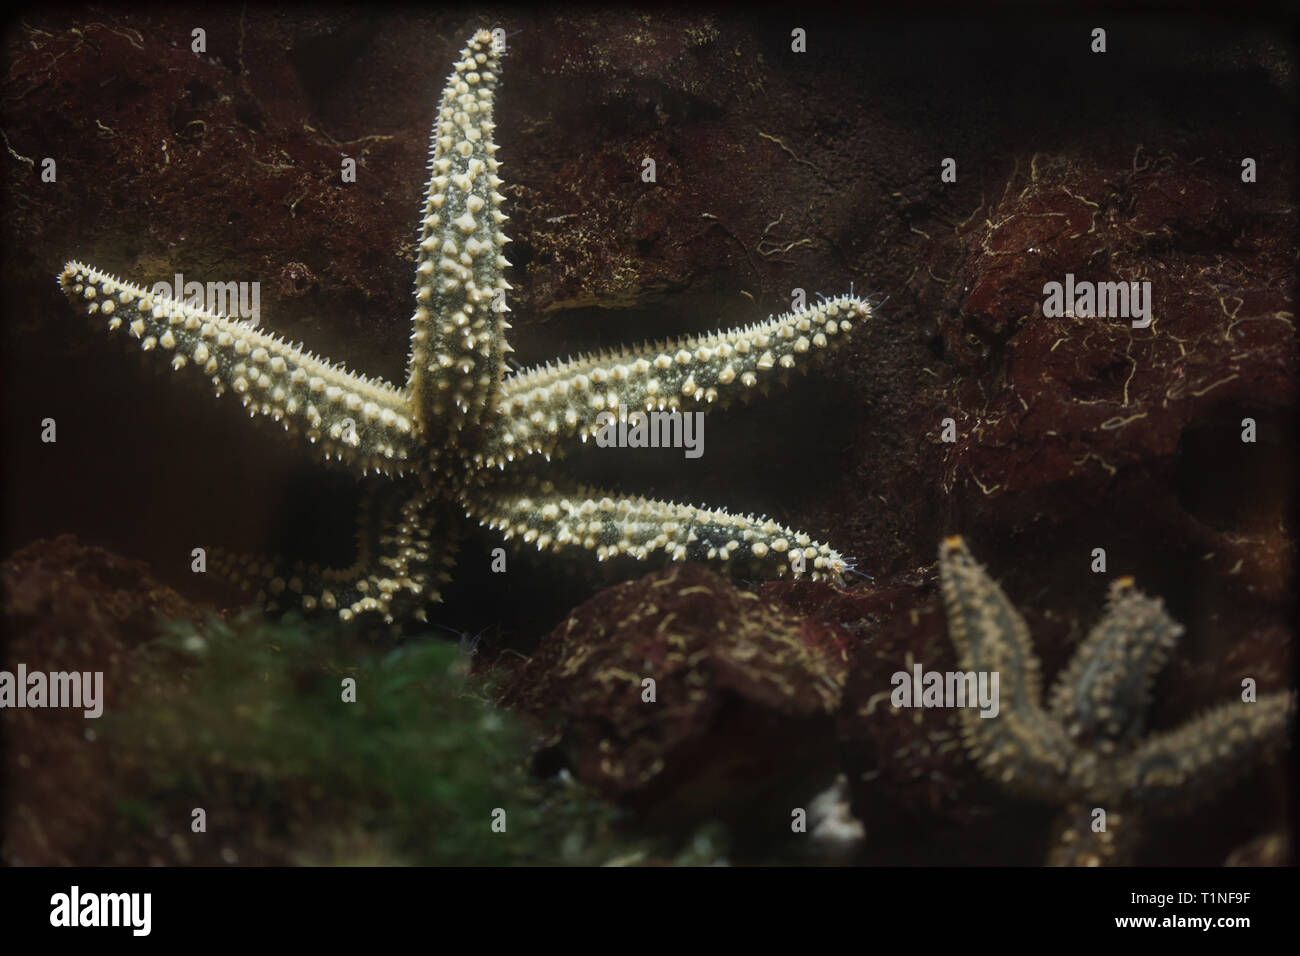 Spiny starfish (Marthasterias glacialis). Marine animal. Stock Photo